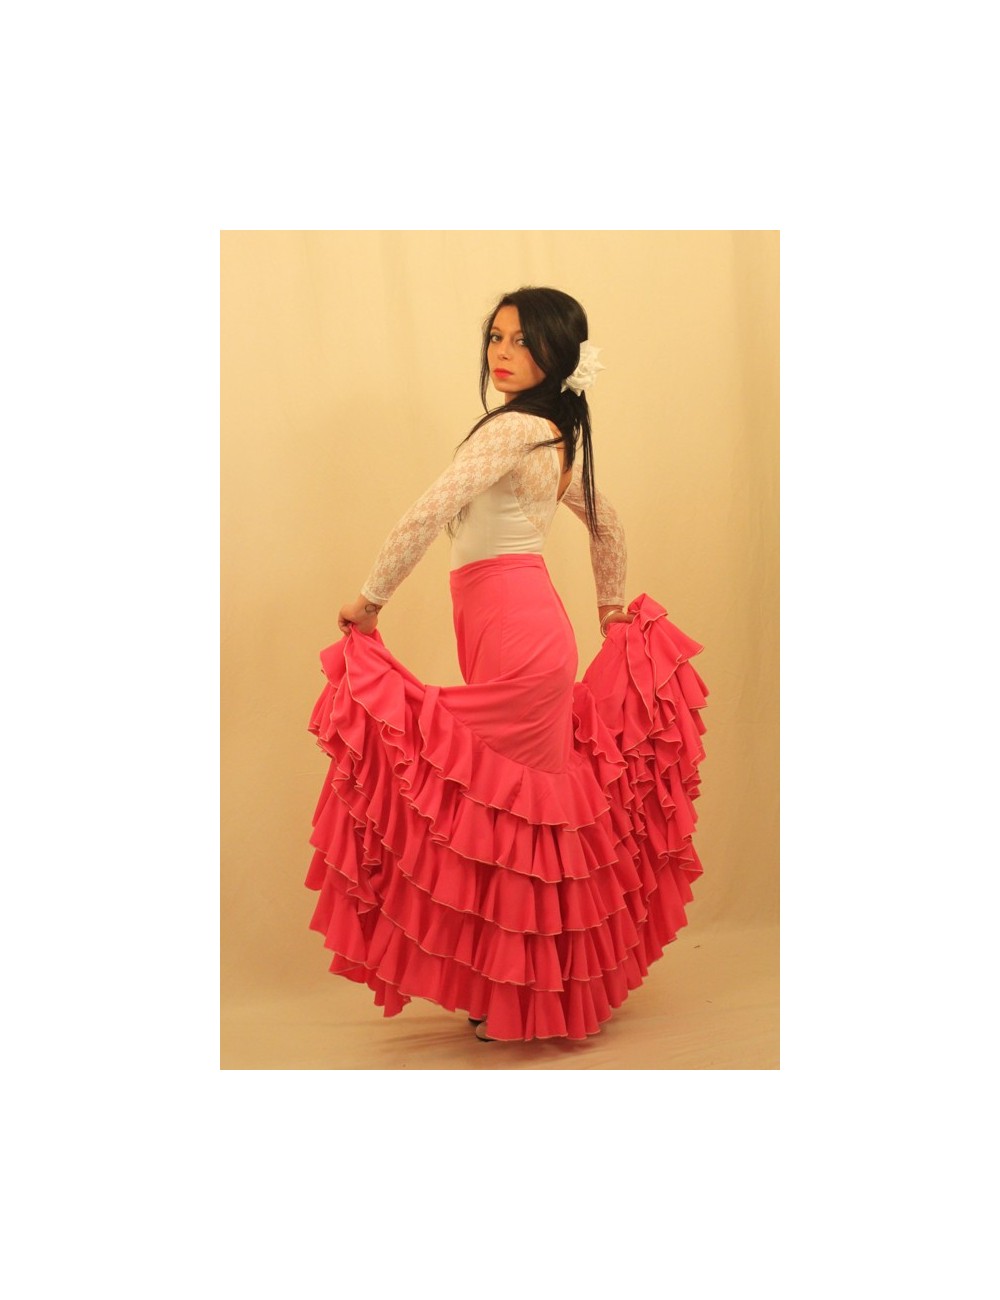 Jupe flamenco rouge Tcha tcha  1